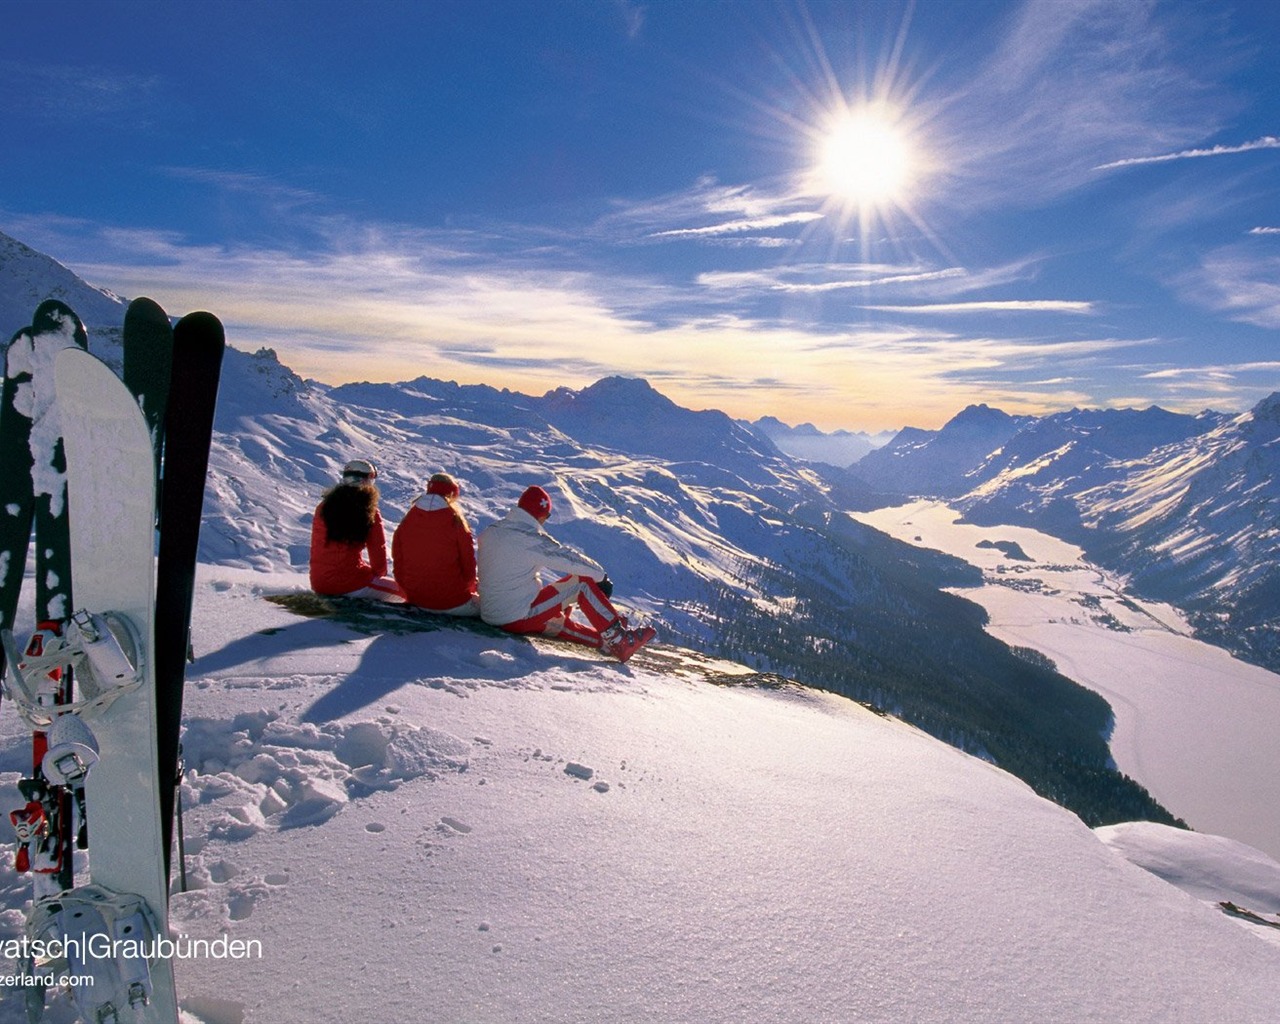 瑞士冬季旅游景点壁纸6 - 1280x1024